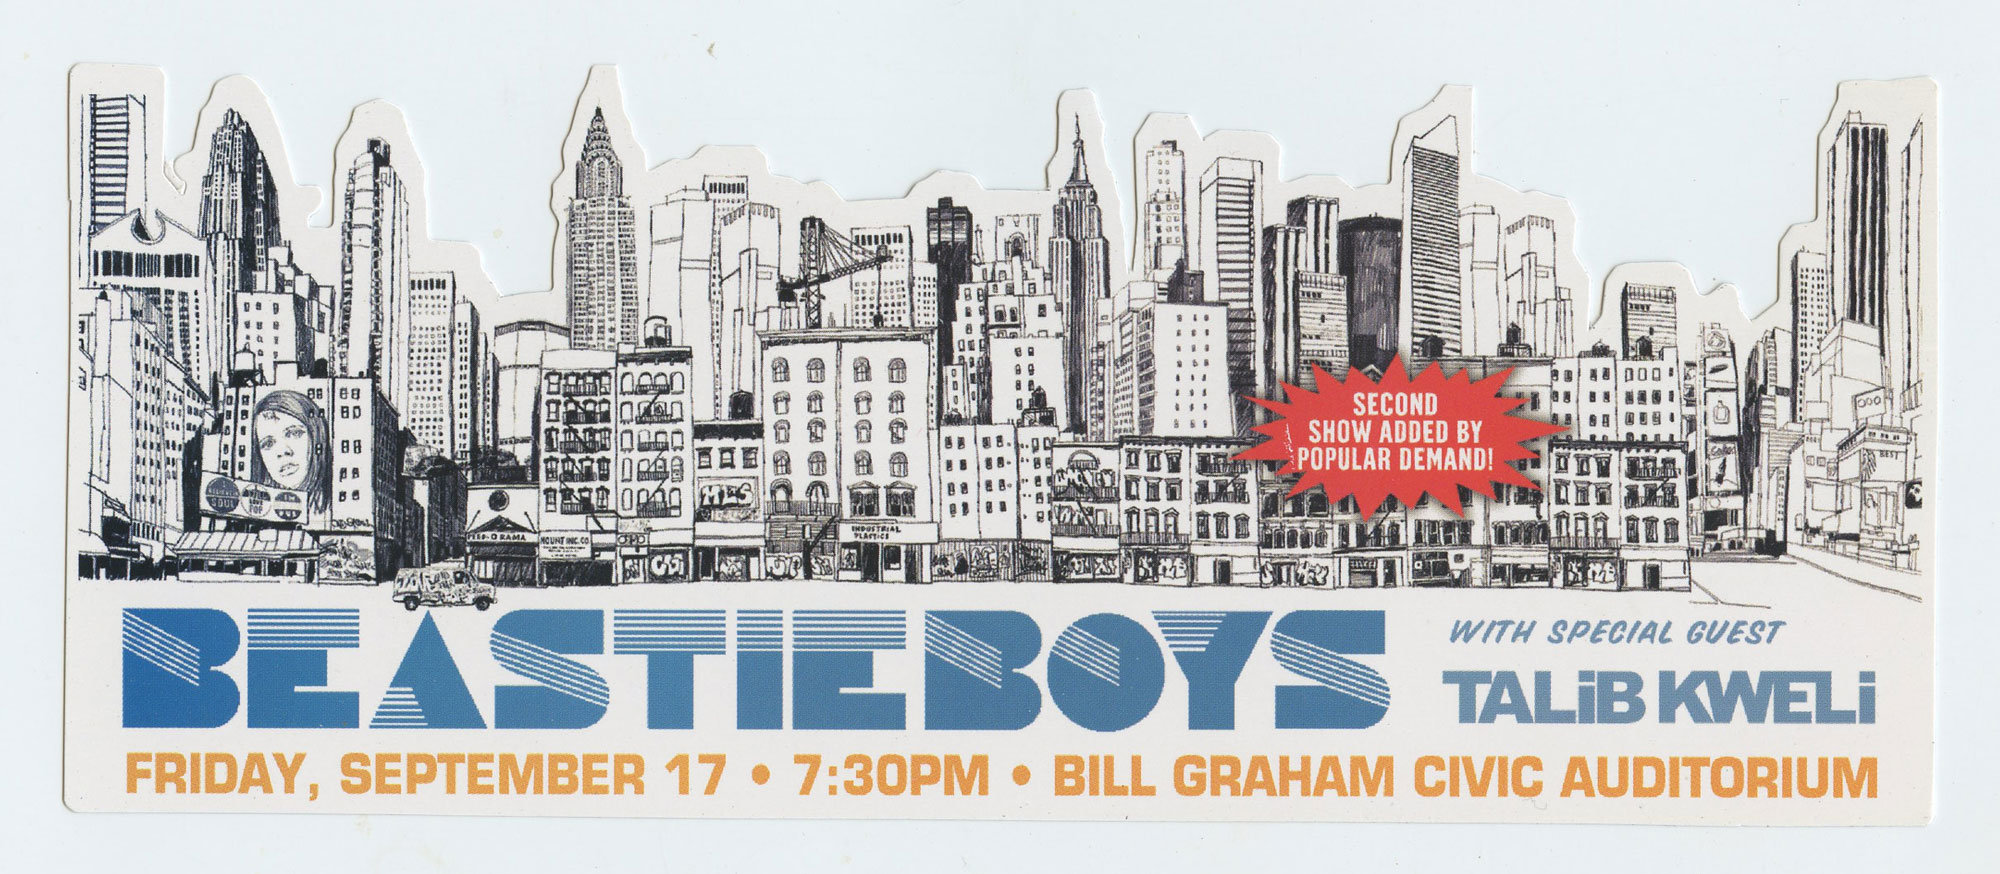 Beastie Boys Handbill 2004 Sep 17 Bill Graham Civic Auditorium